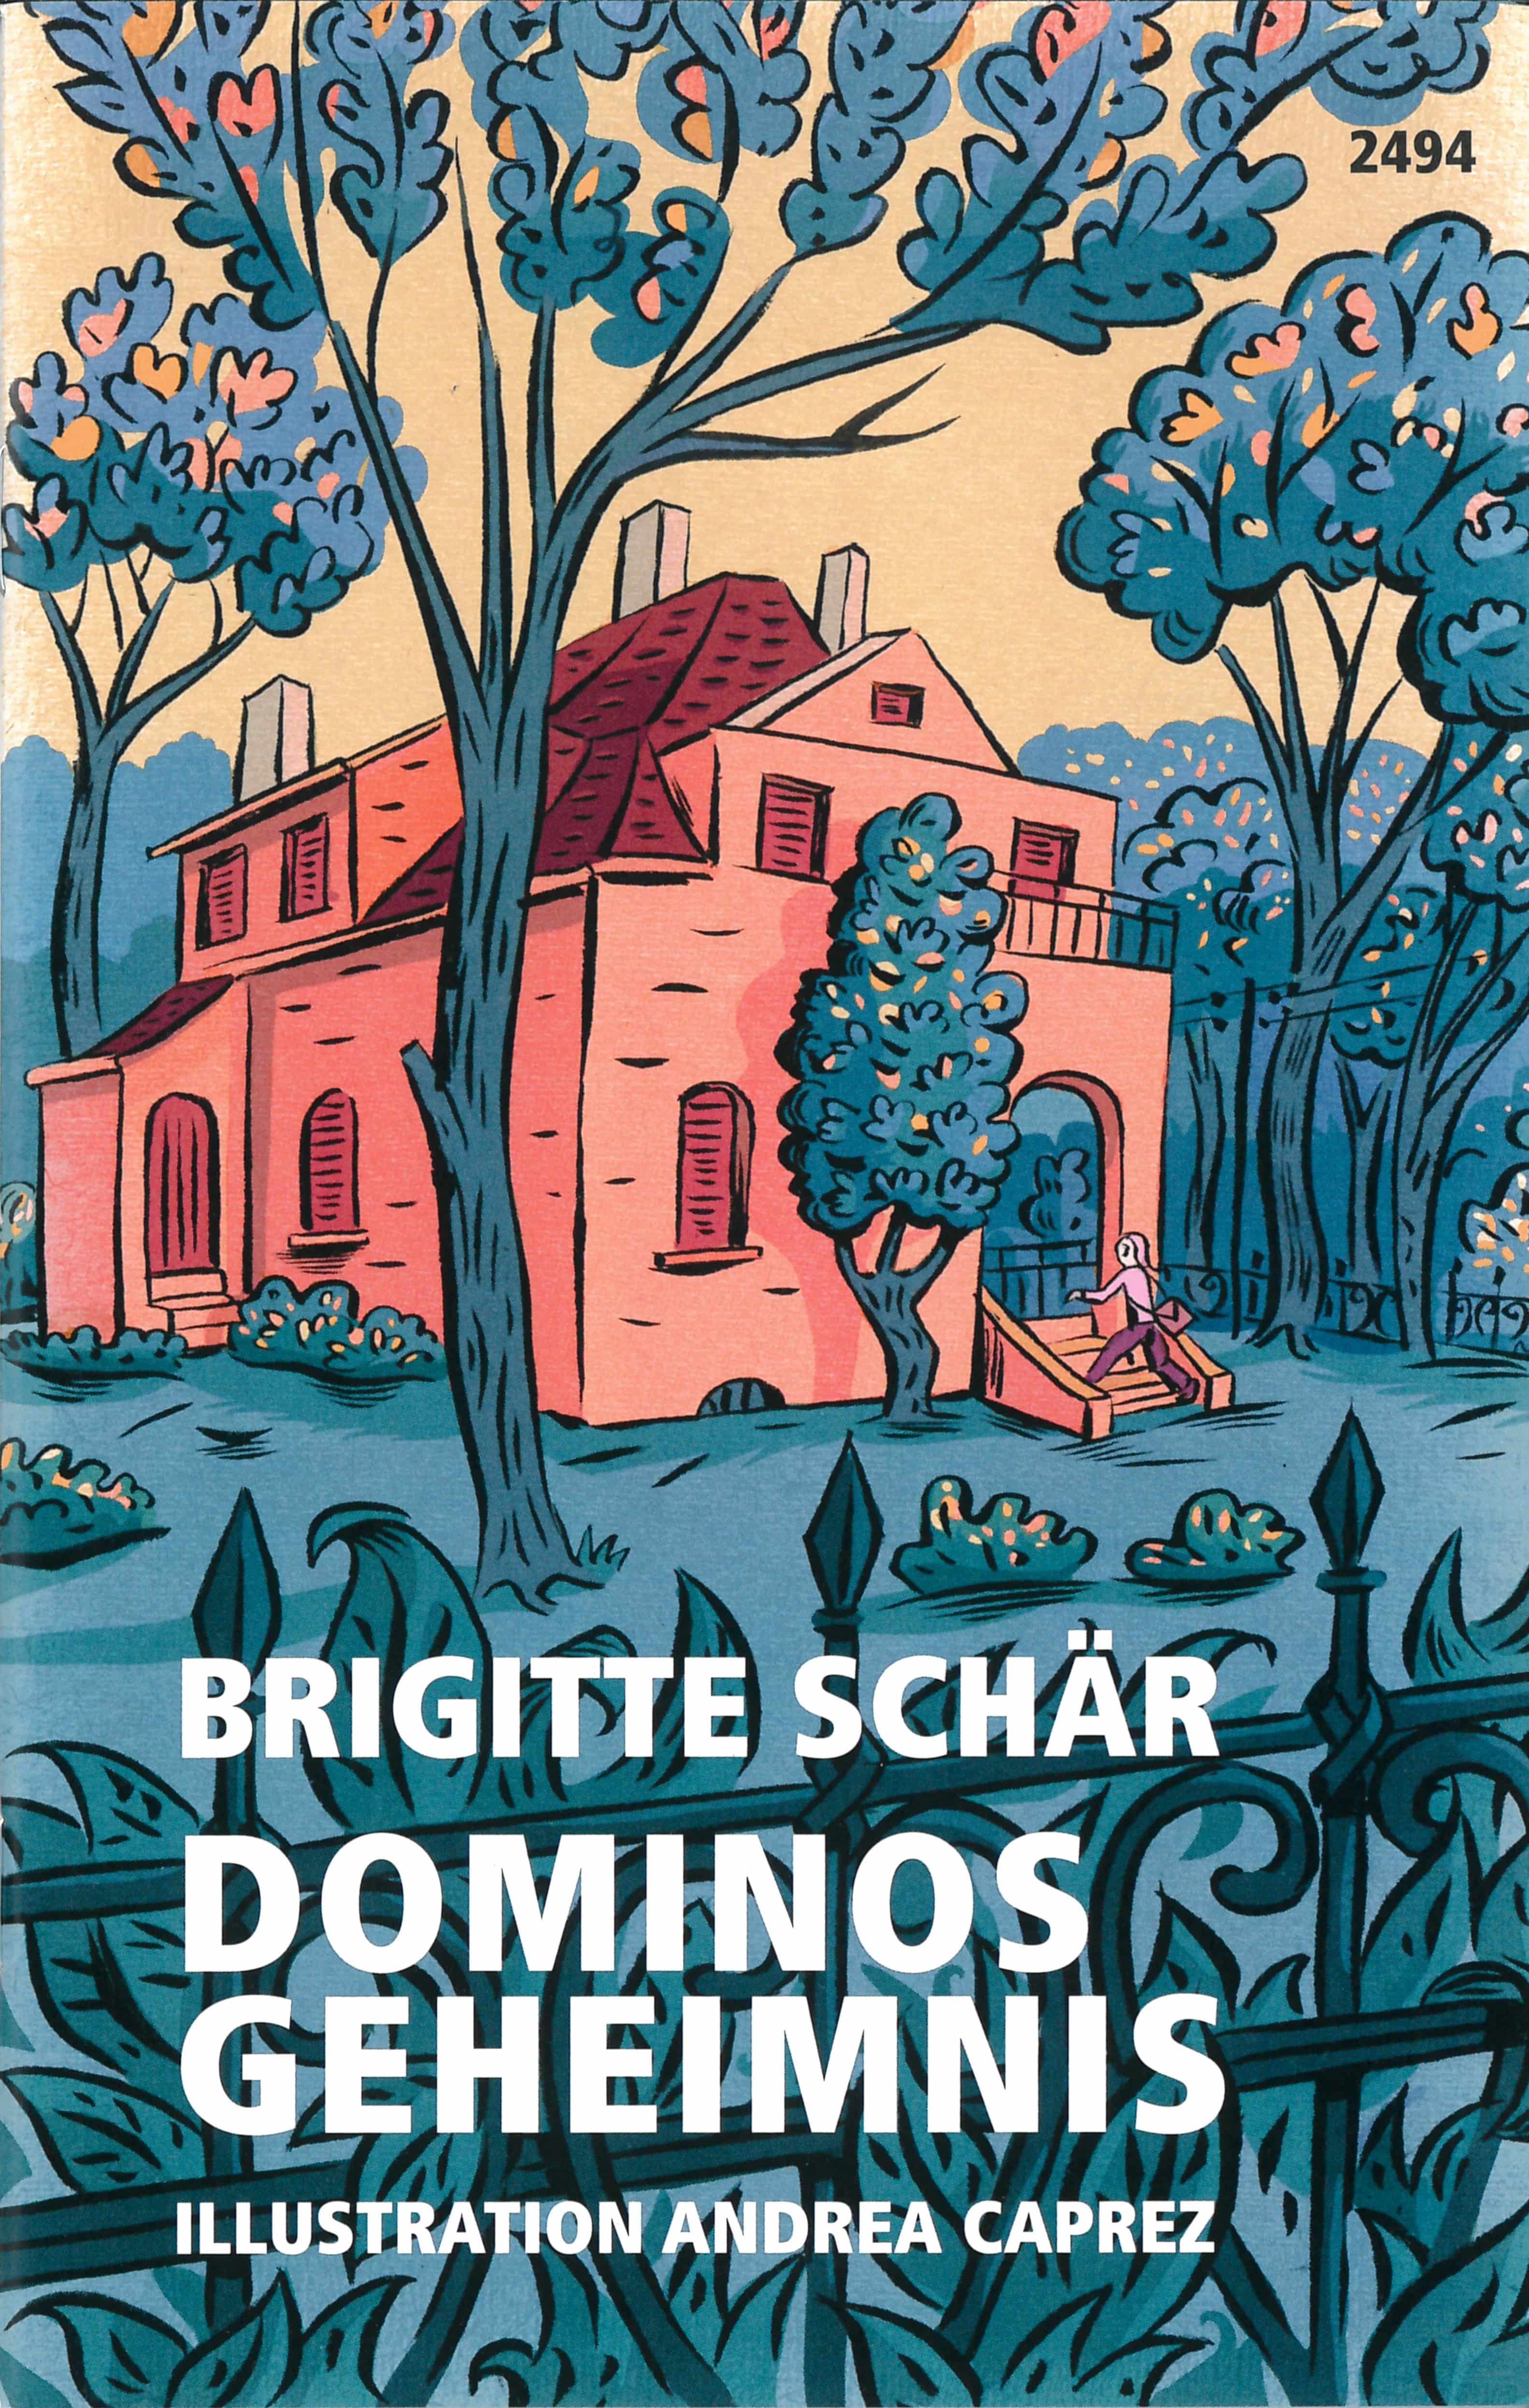 Dominos Geheimnis, ein Jugendbuch von Brigitte Schaer, Illustration von Andrea Caprez, SJW Verlag, Fantasy